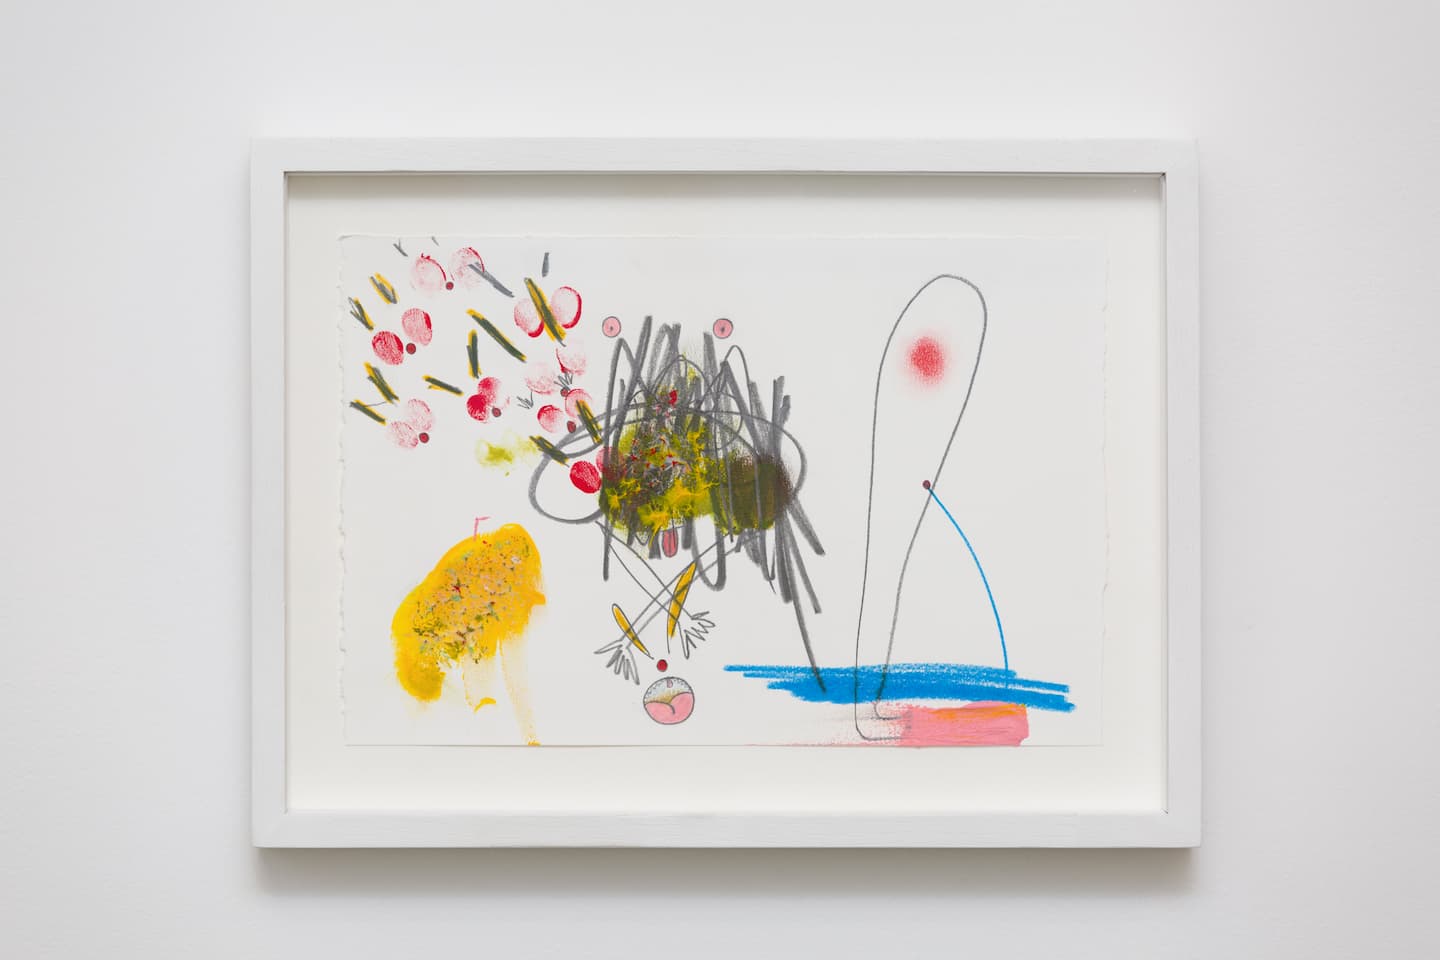 Mika Rottenberg, MRLA022, 2020. Graphite et crayon de couleur sur papier 19,1 x 28,3 cm. Achat à la Galerie Laurent Godin. Collection FRAC Bourgogne. ©DR